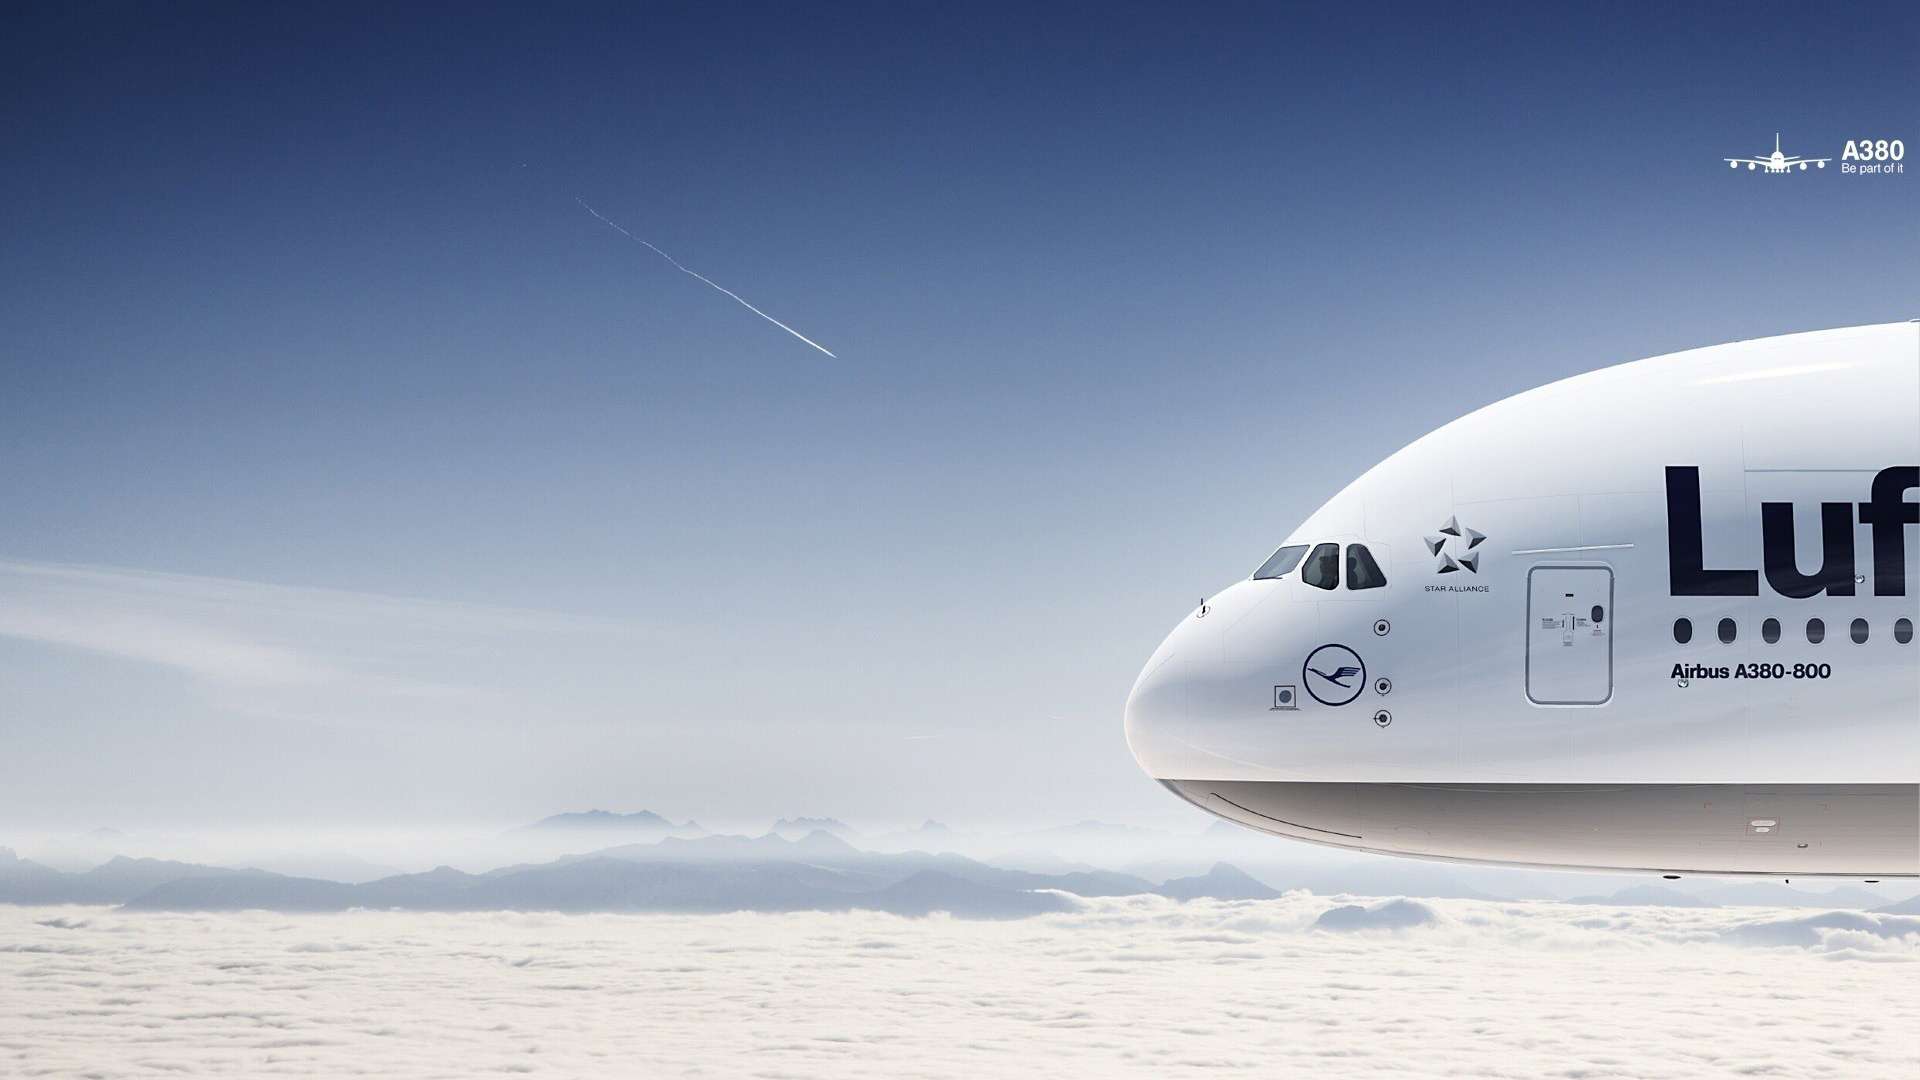 A380 Lufthansa Clouds HD Wallpaper FullHDwpp Full